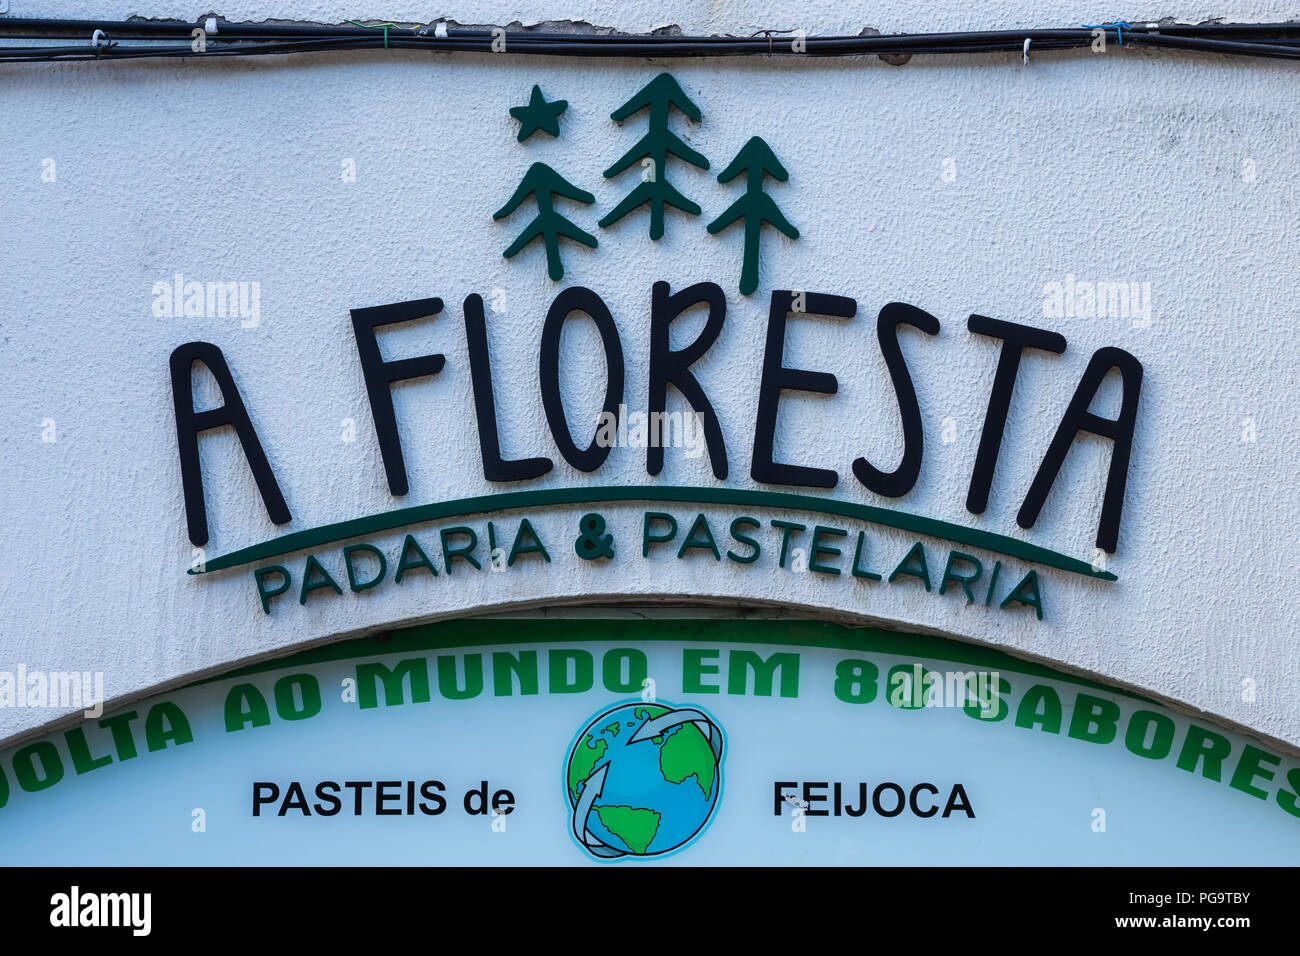 La foresta , a Floresta, padaria & pastelaria, panetteria e pasticceria, villaggio Manteigas scena, Portogallo Foto Stock